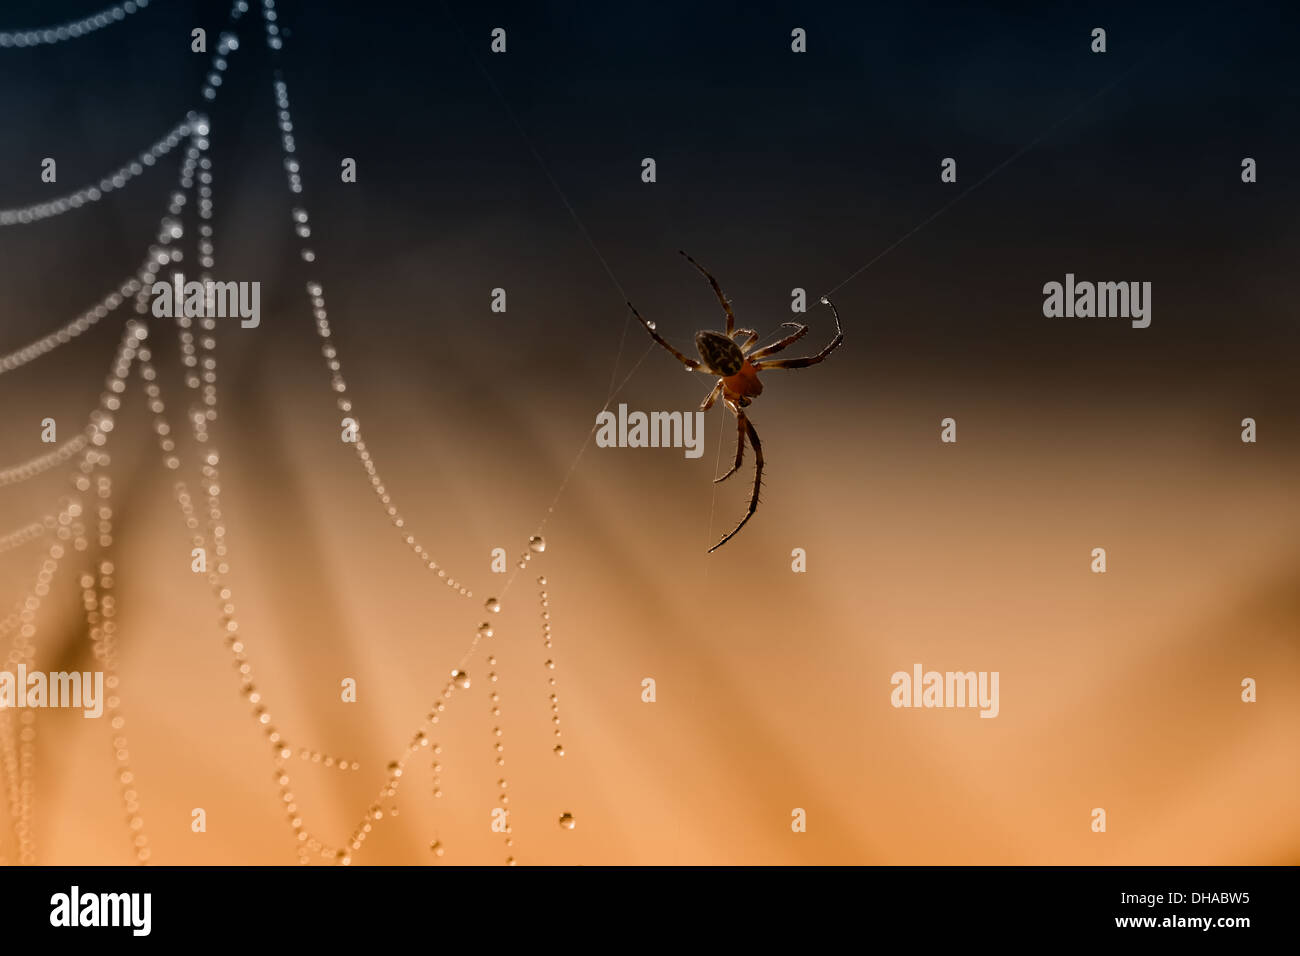 Spinnennetz mit Tau benetzt von der Spinne gut bewacht. Hintergrund in blau und orange gefärbt. Stockfoto